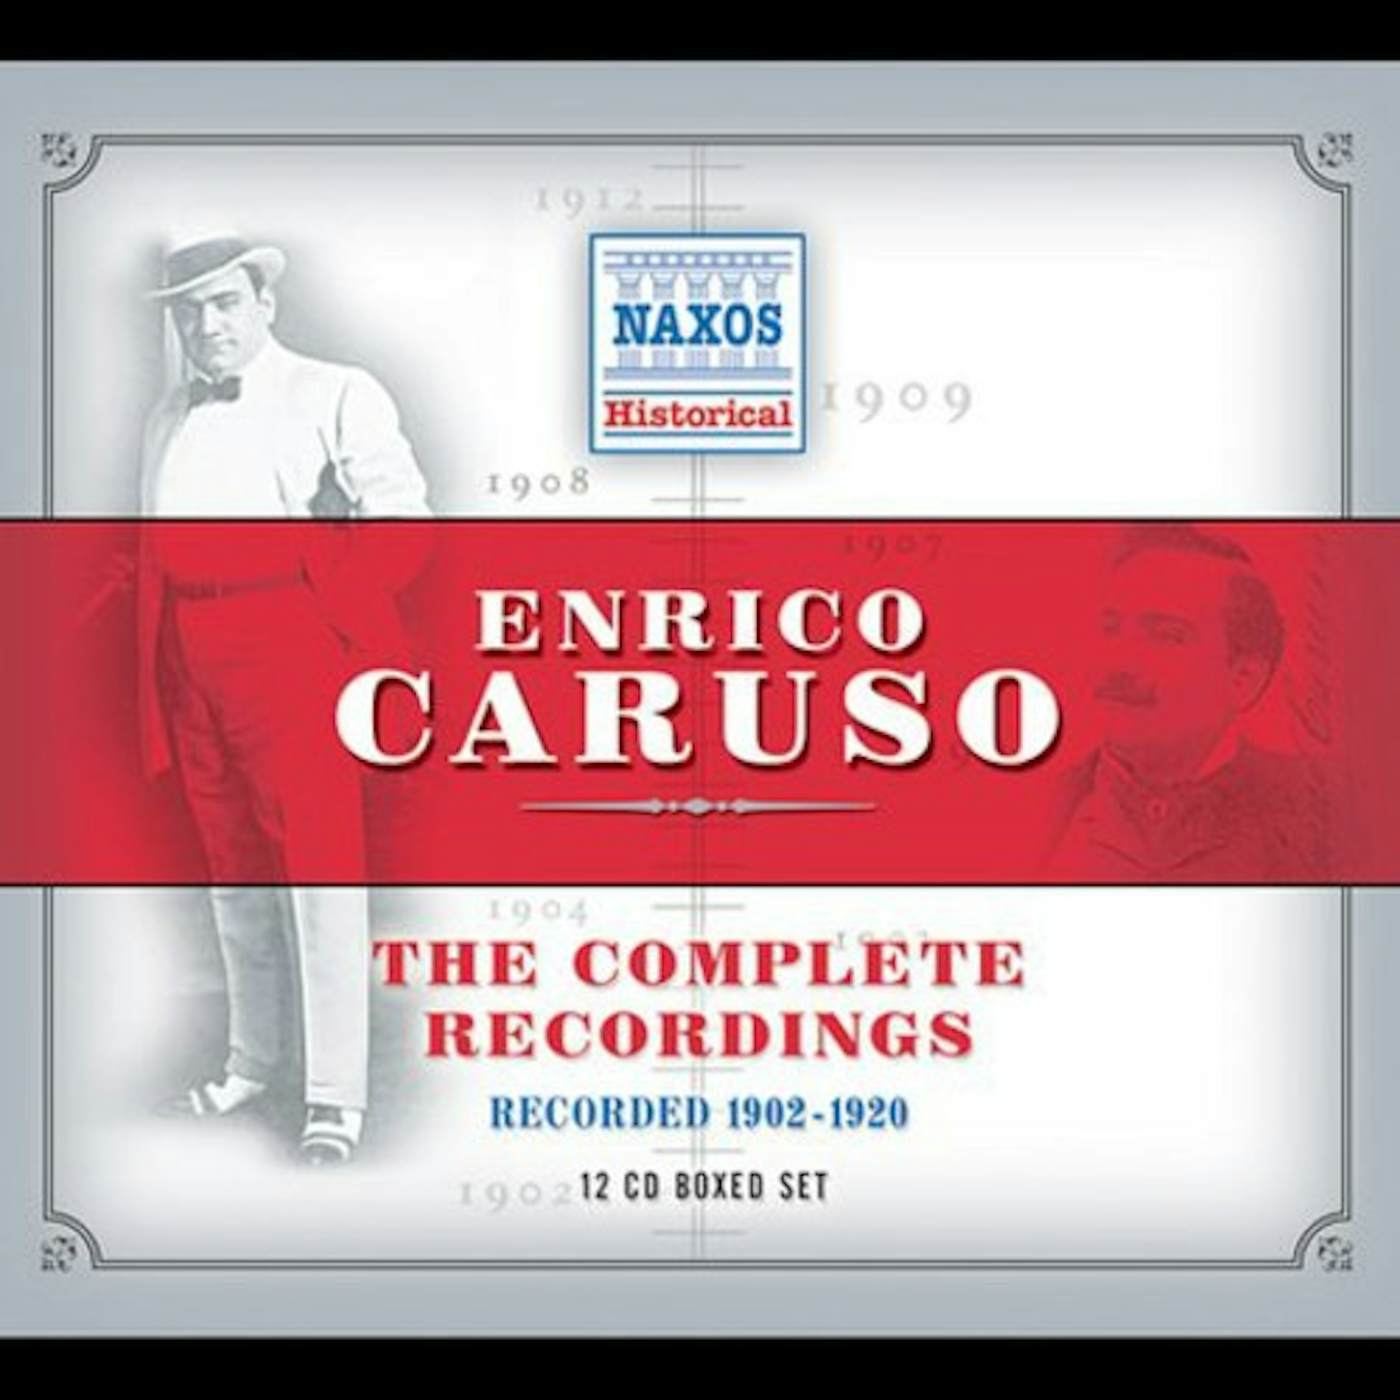 Enrico Caruso COMPLETE RECORDINGS 1902-1920 CD